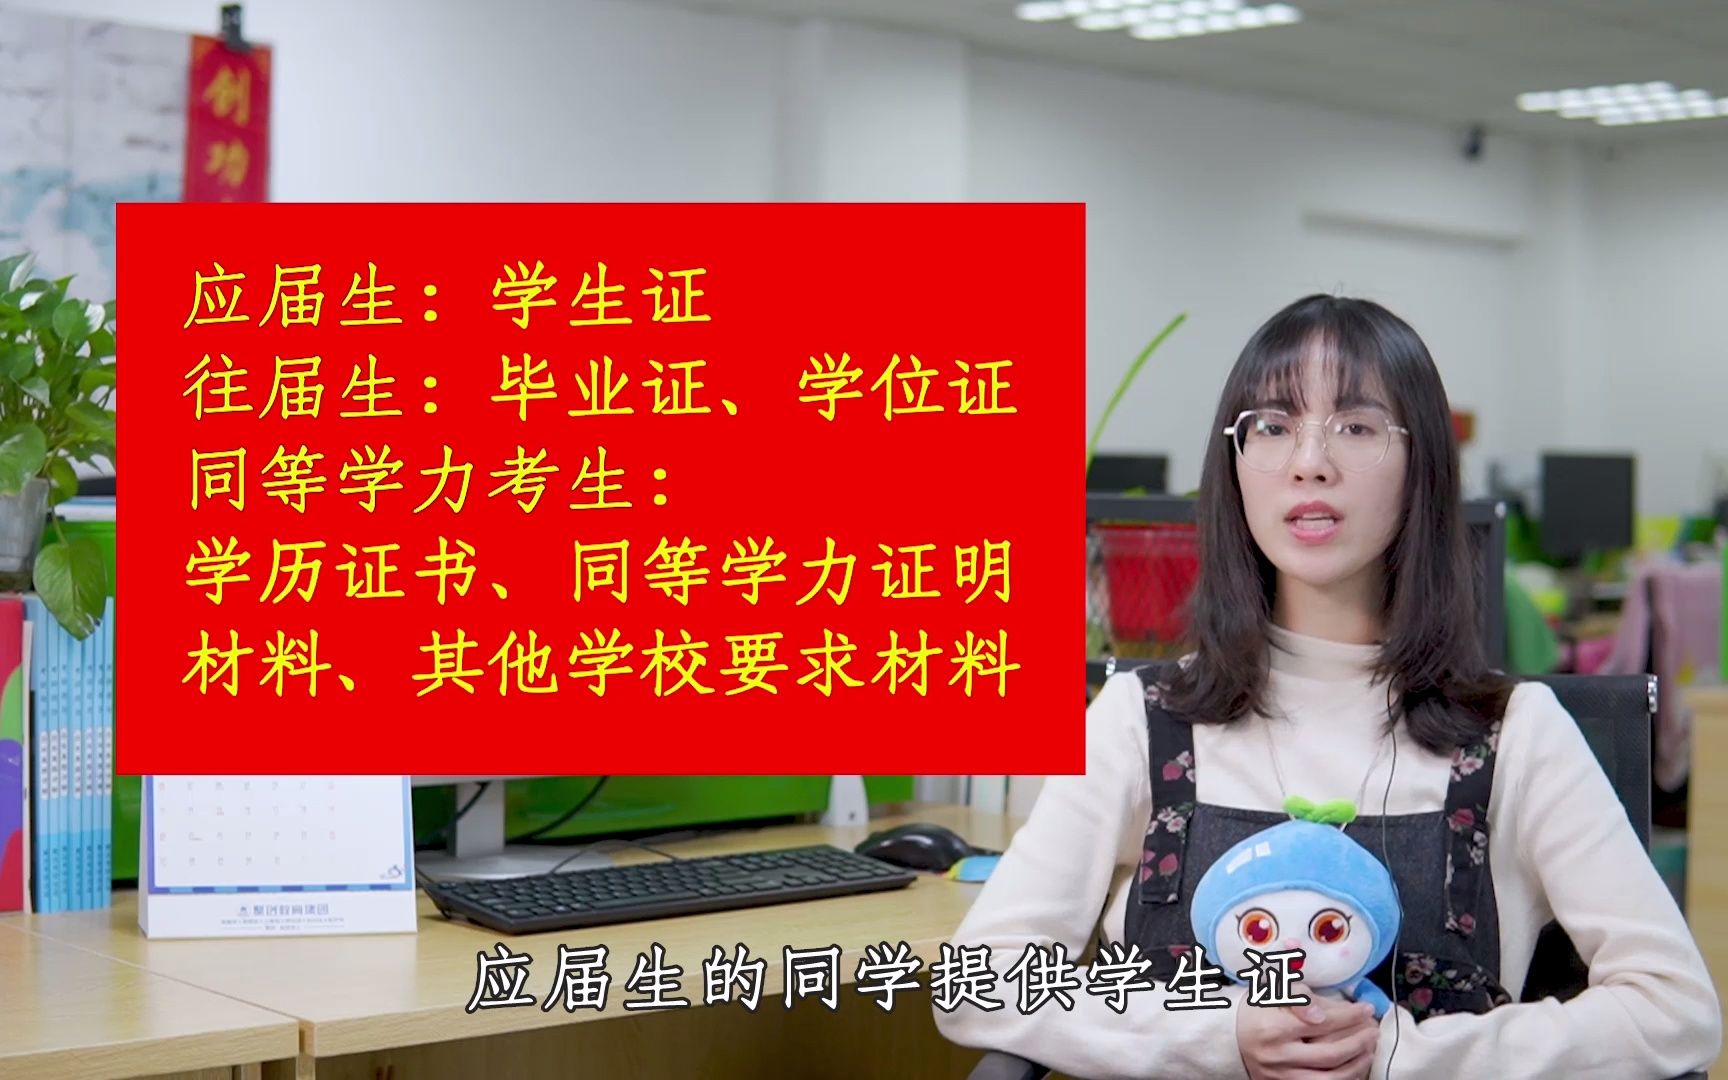 上海电机学院单列分数线_上海电机学院今年分数线_上海电机学院分数线